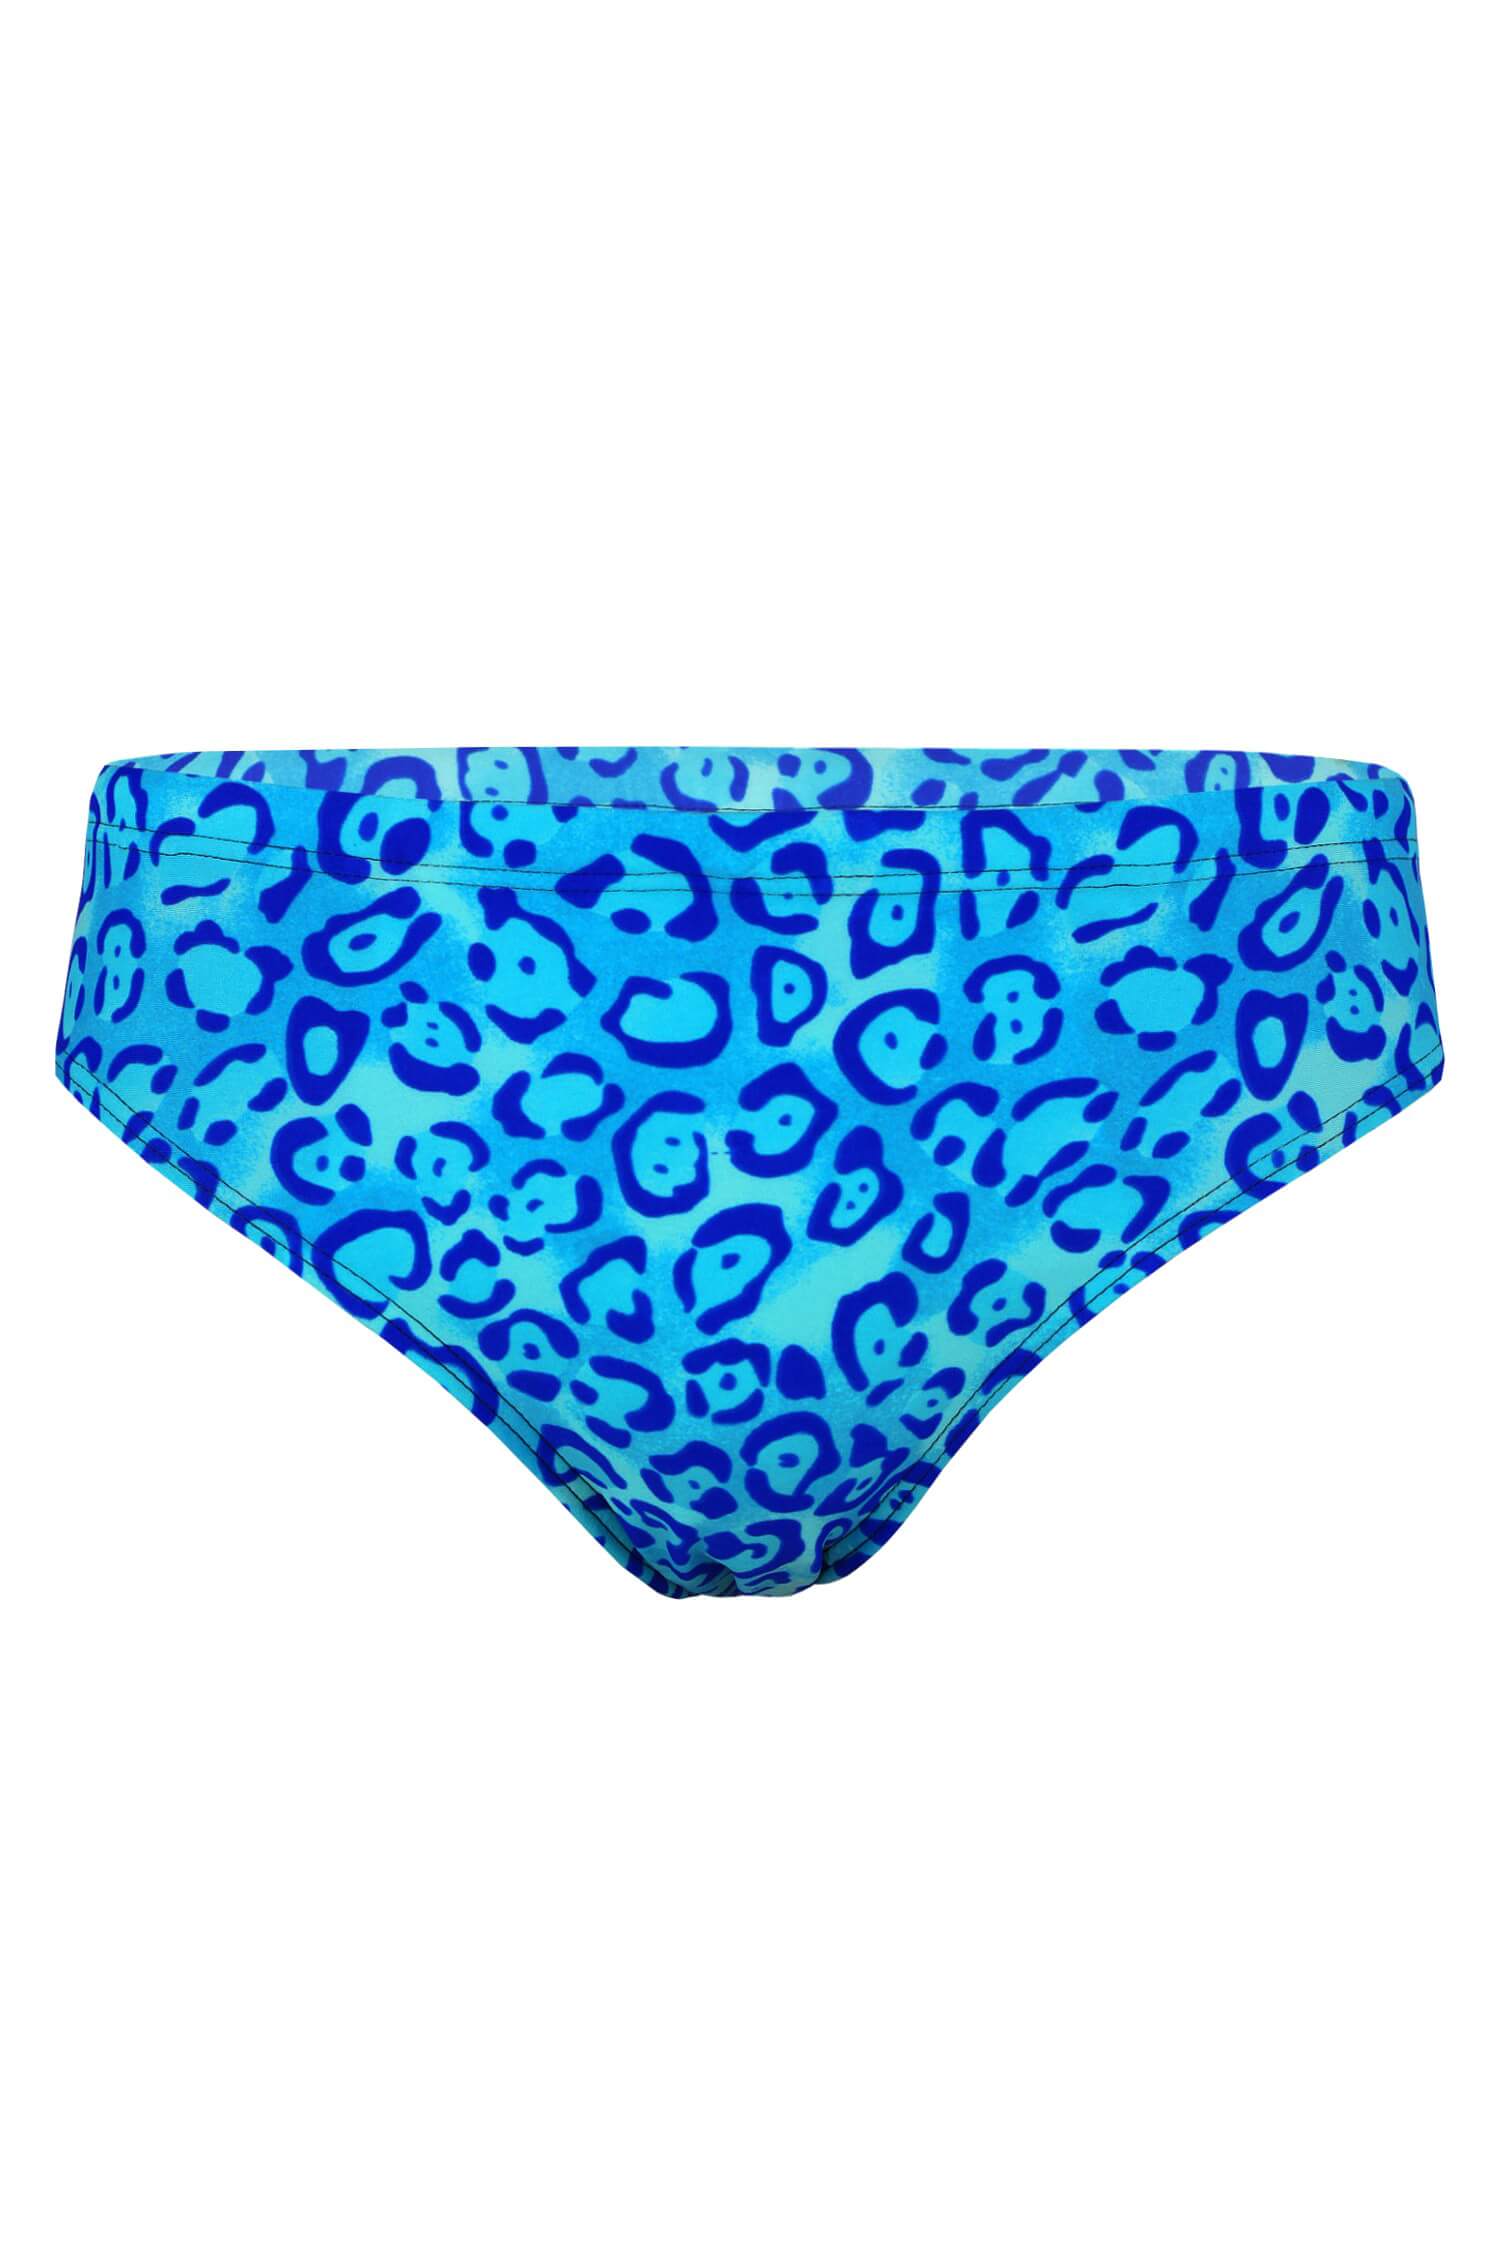 Retro ora pánské slipové plavky 003 M modrá